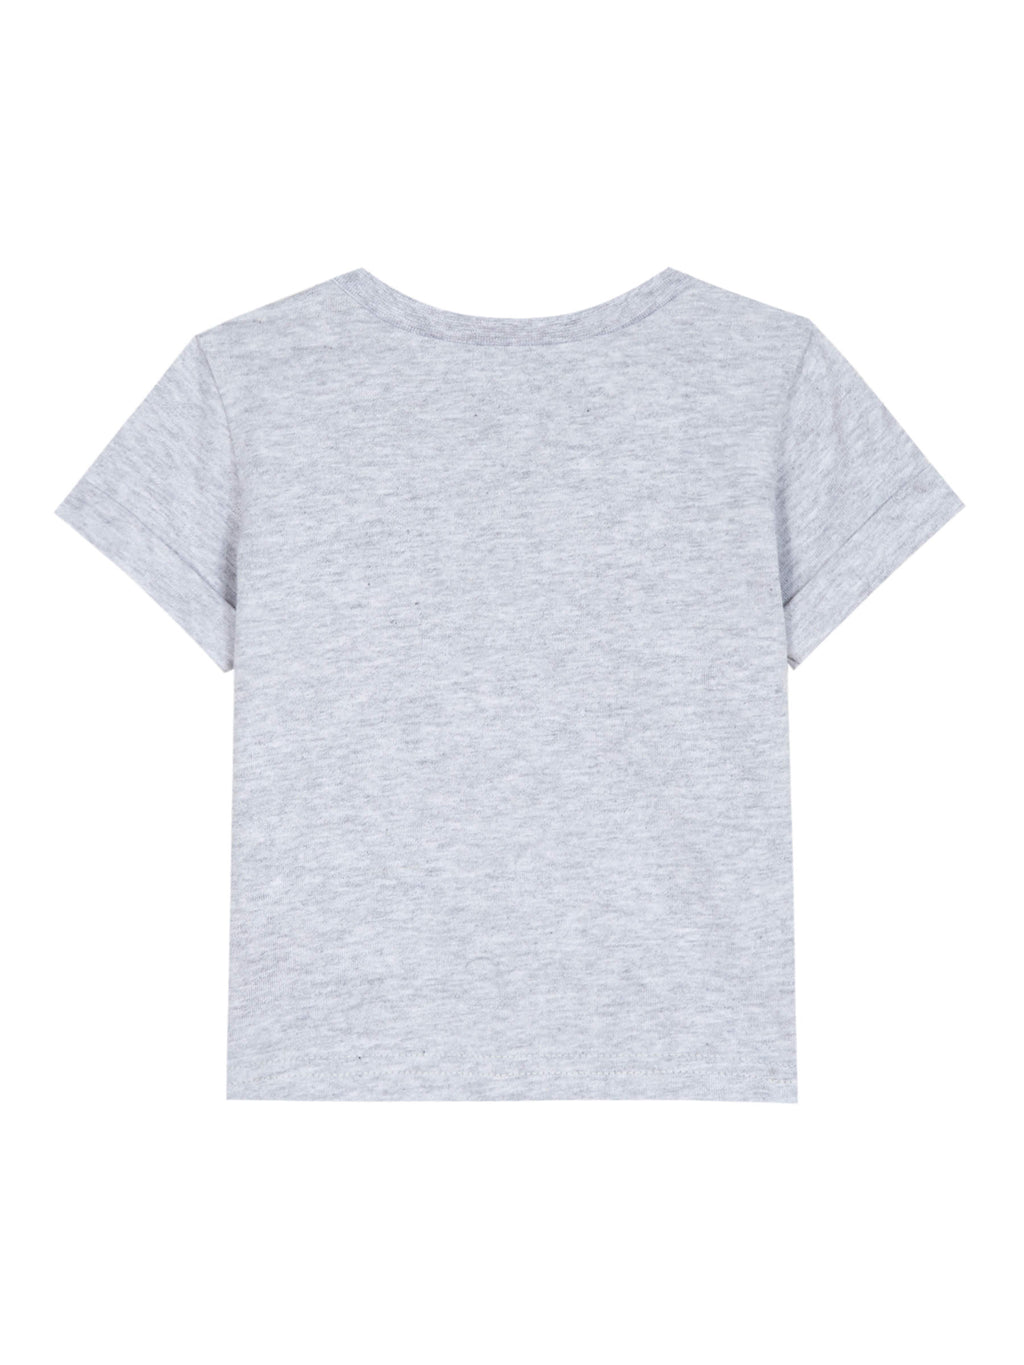 Tee-shirt - Jersey moucheté gris